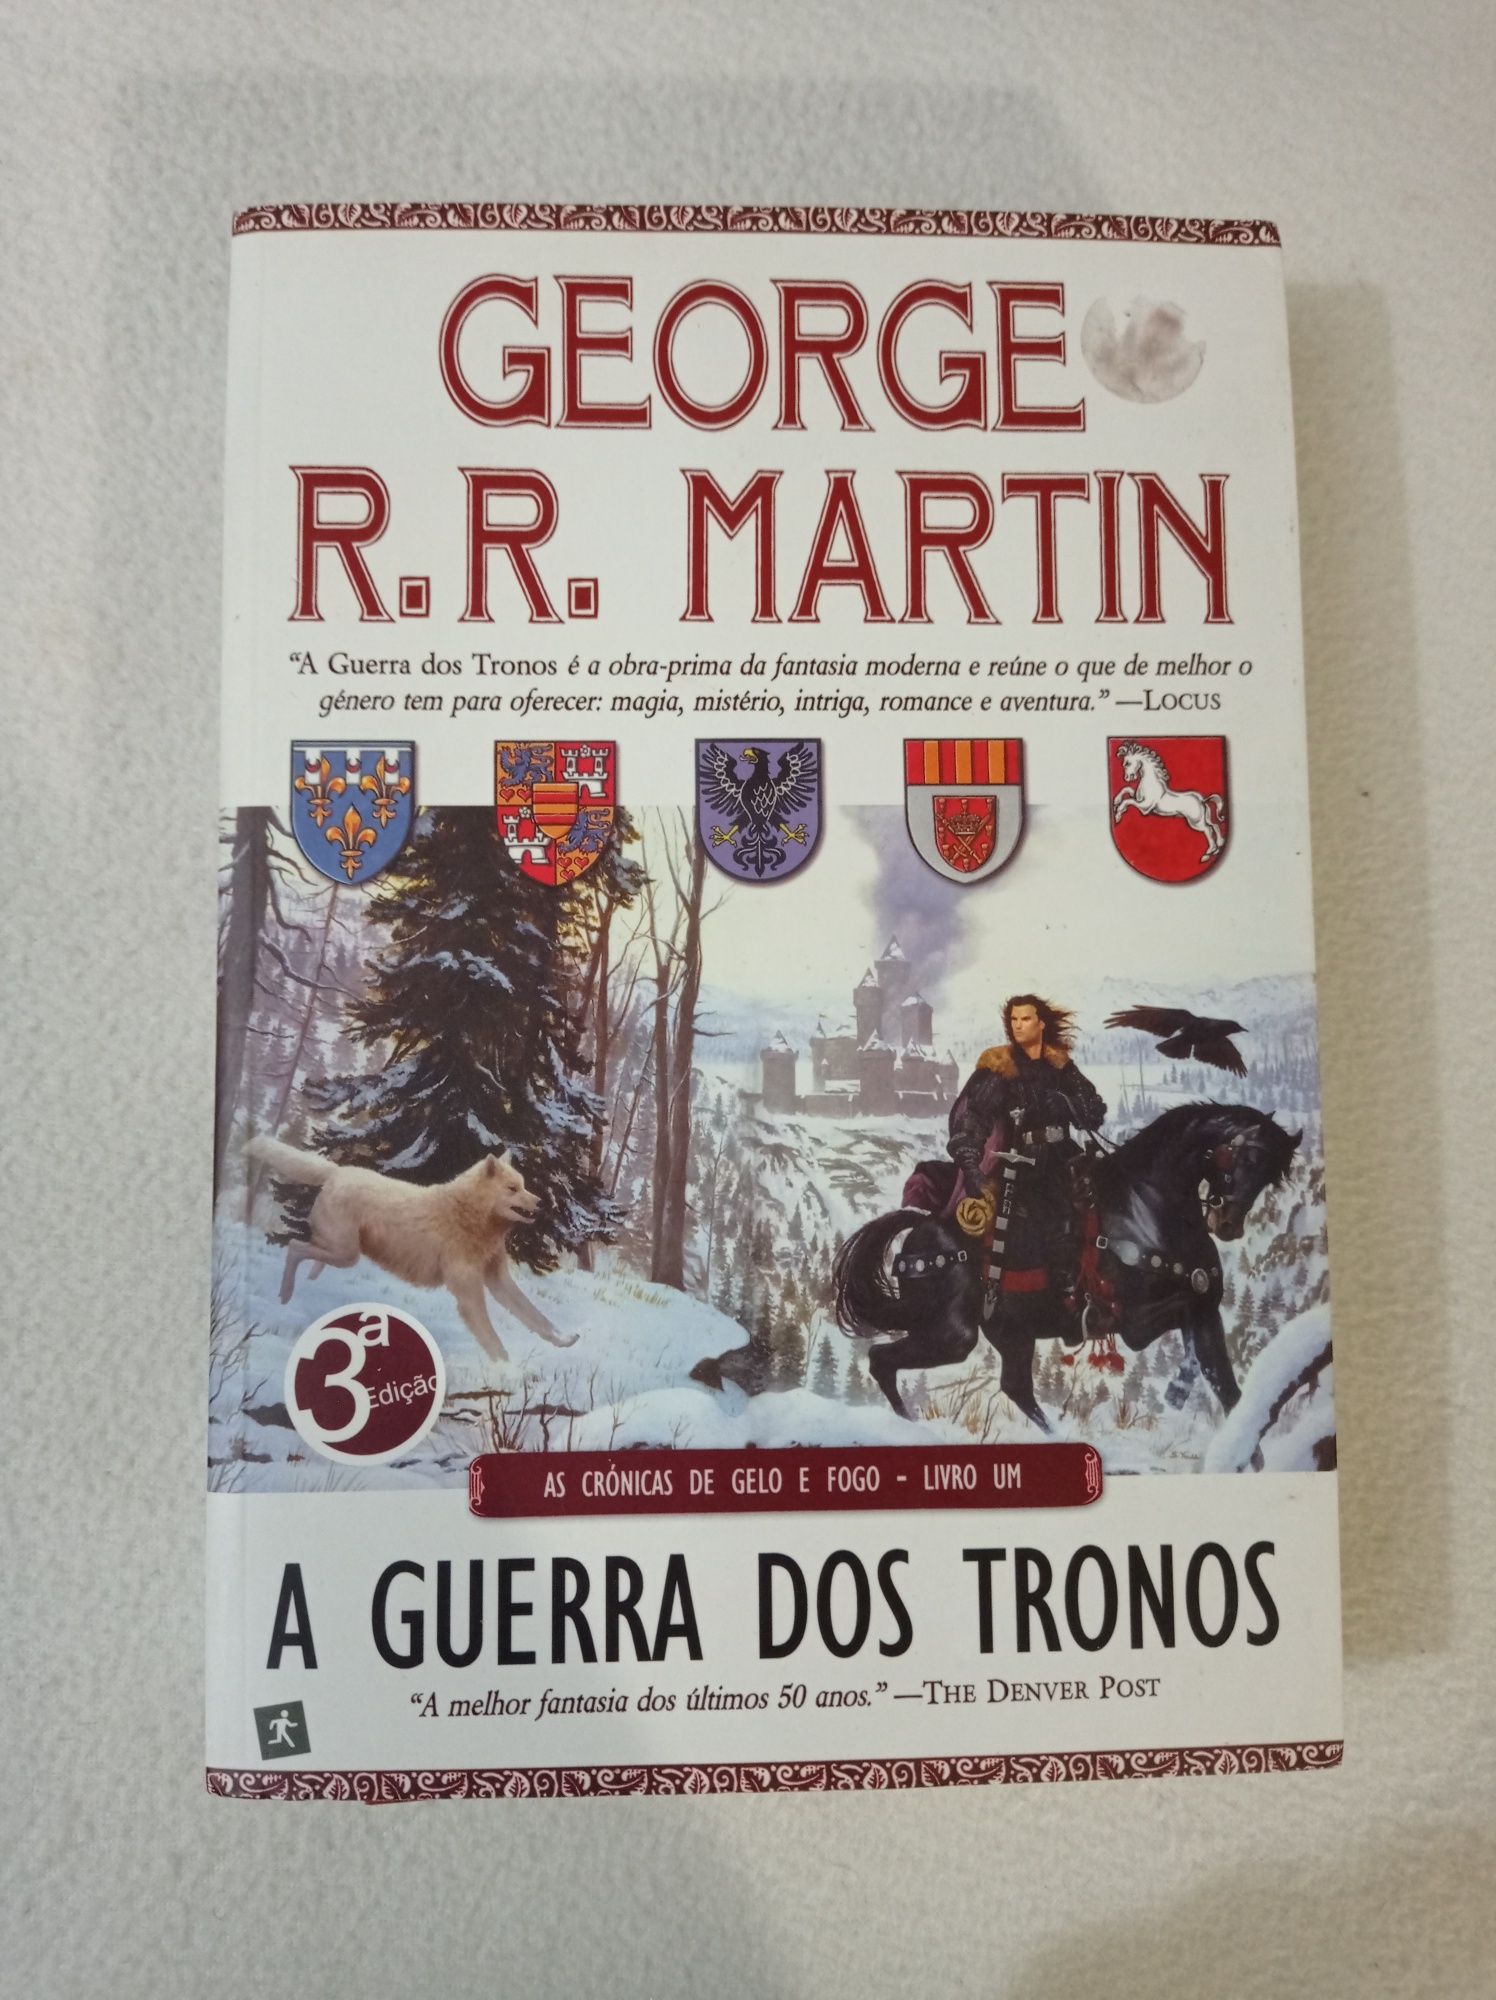 A guerra dos tronos - as crónicas de gelo e fogo - livro 1